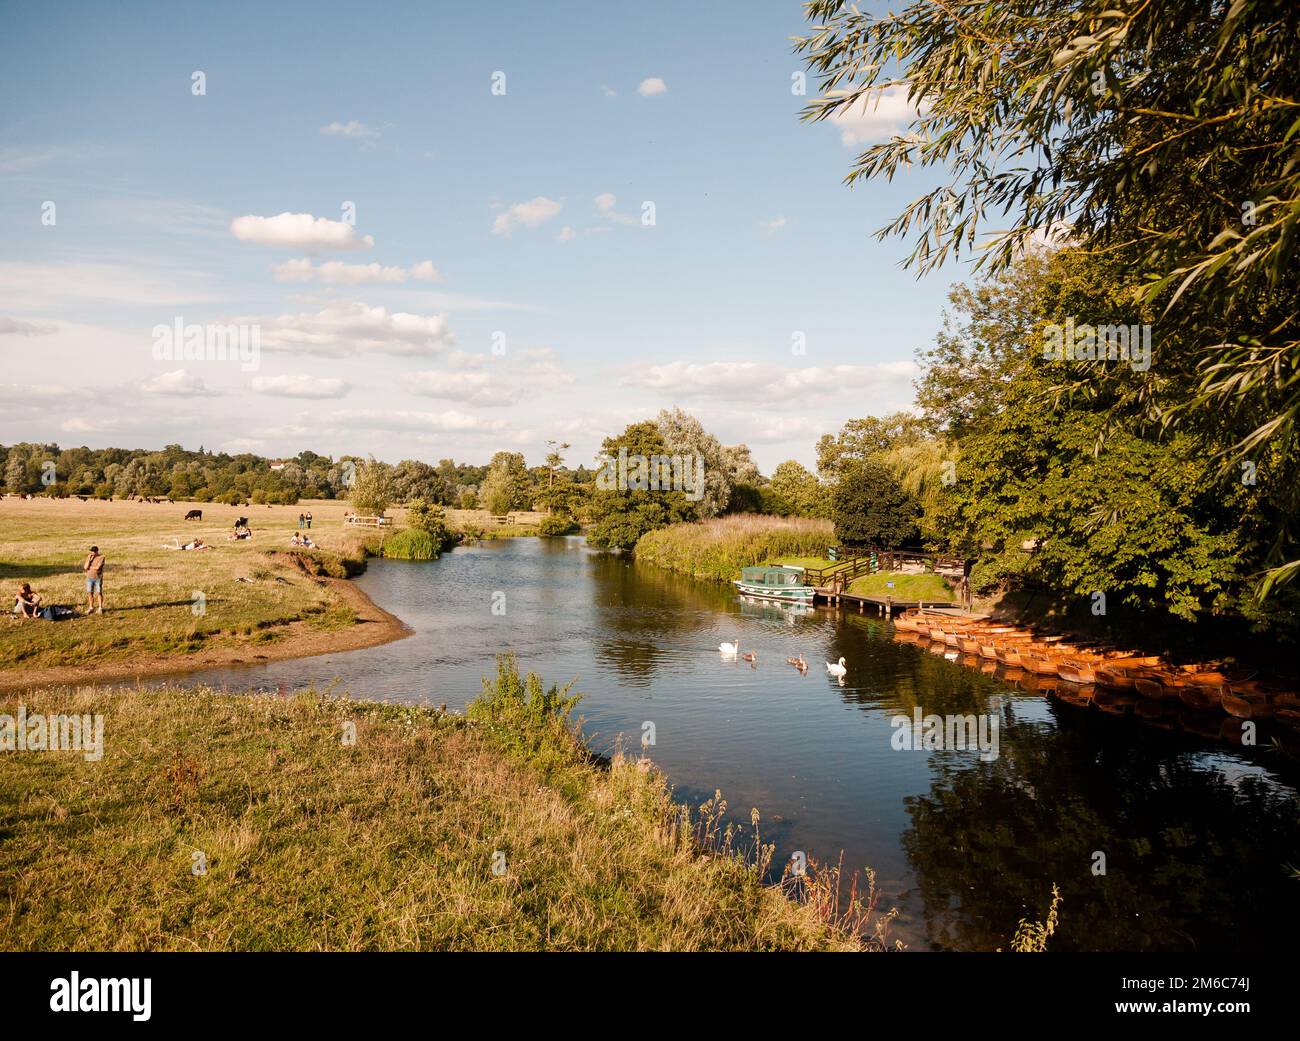 Eine Sommerszene in dedham mit dem Fluss stour, Schwanen, Booten und Menschen, die sich entspannen und spazieren gehen Stockfoto